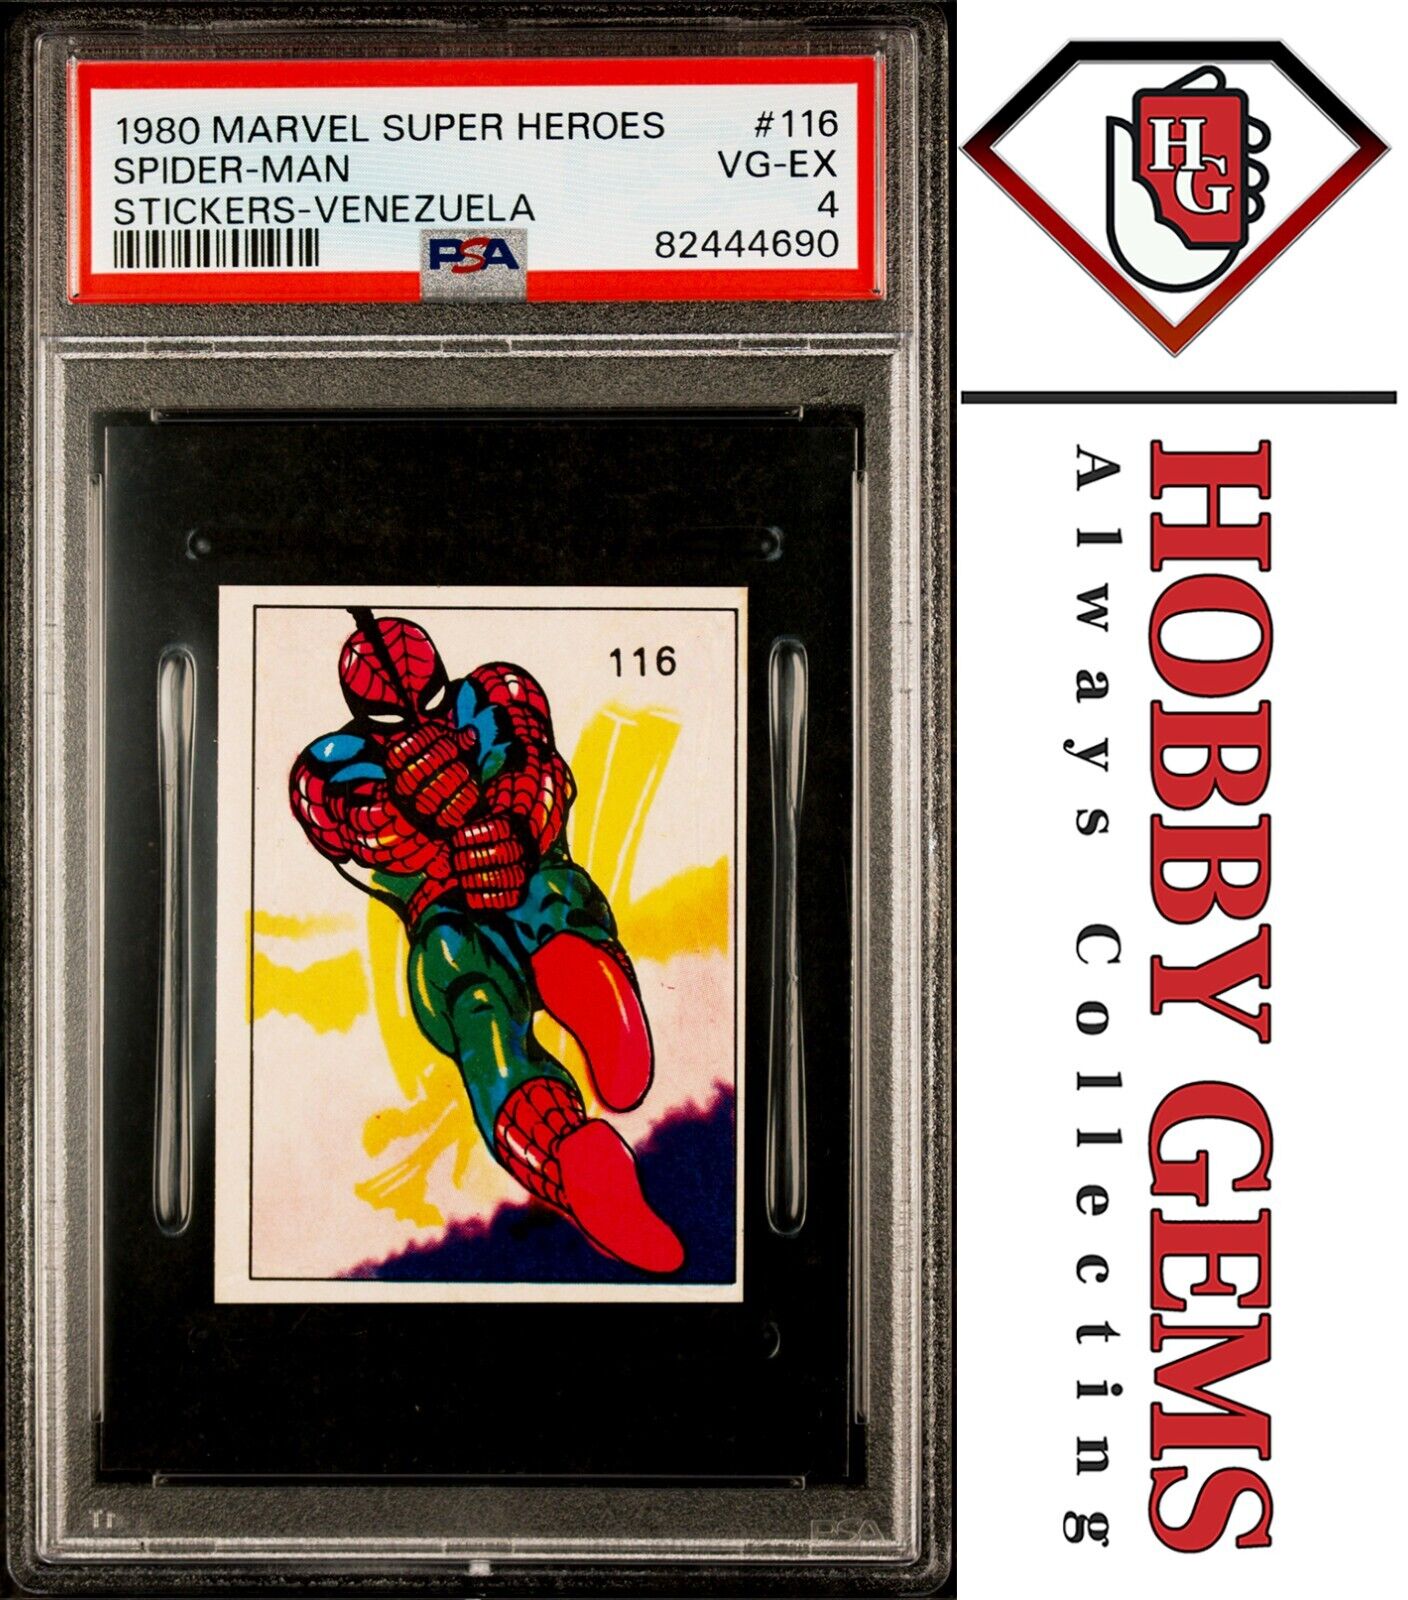 SPIDER-MAN PSA 4 1980 Marvel Super Heroes Sticker-Venezuela #116